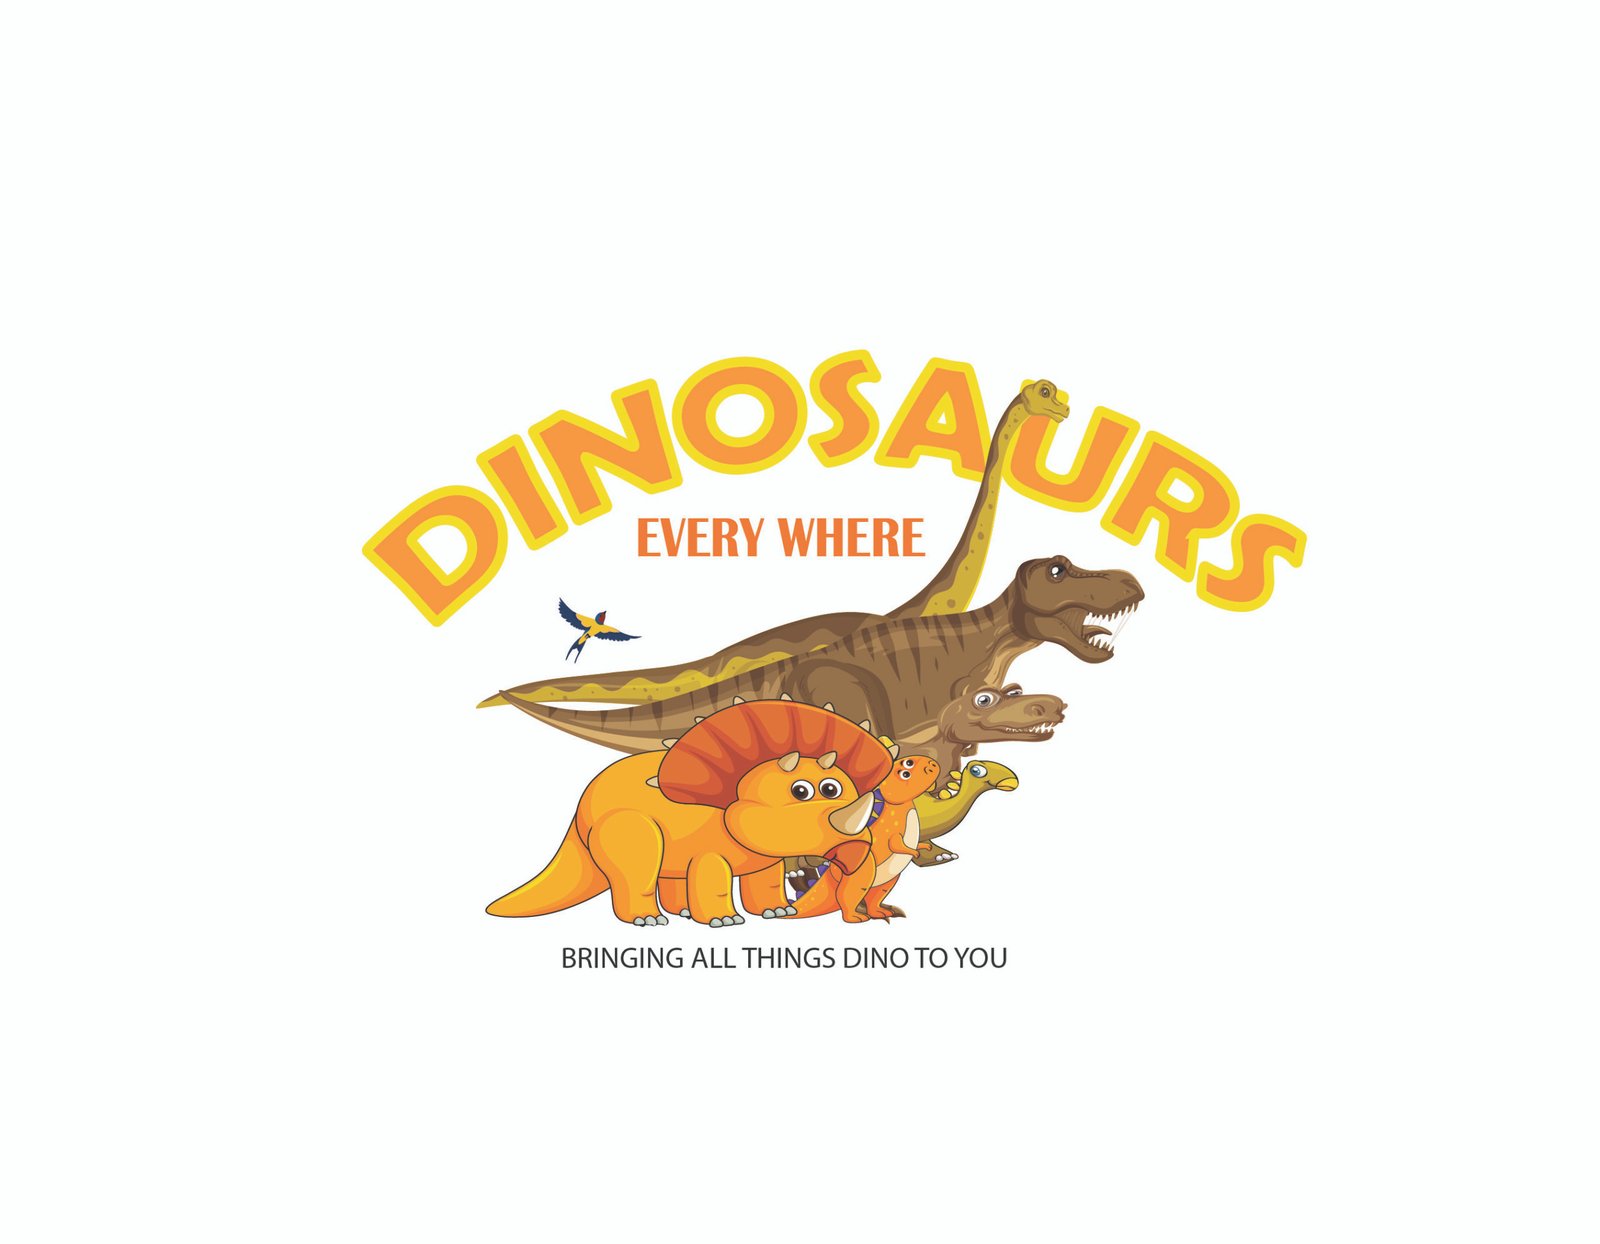 Category: Dinosaur Species - Dinosaurs Everywhere